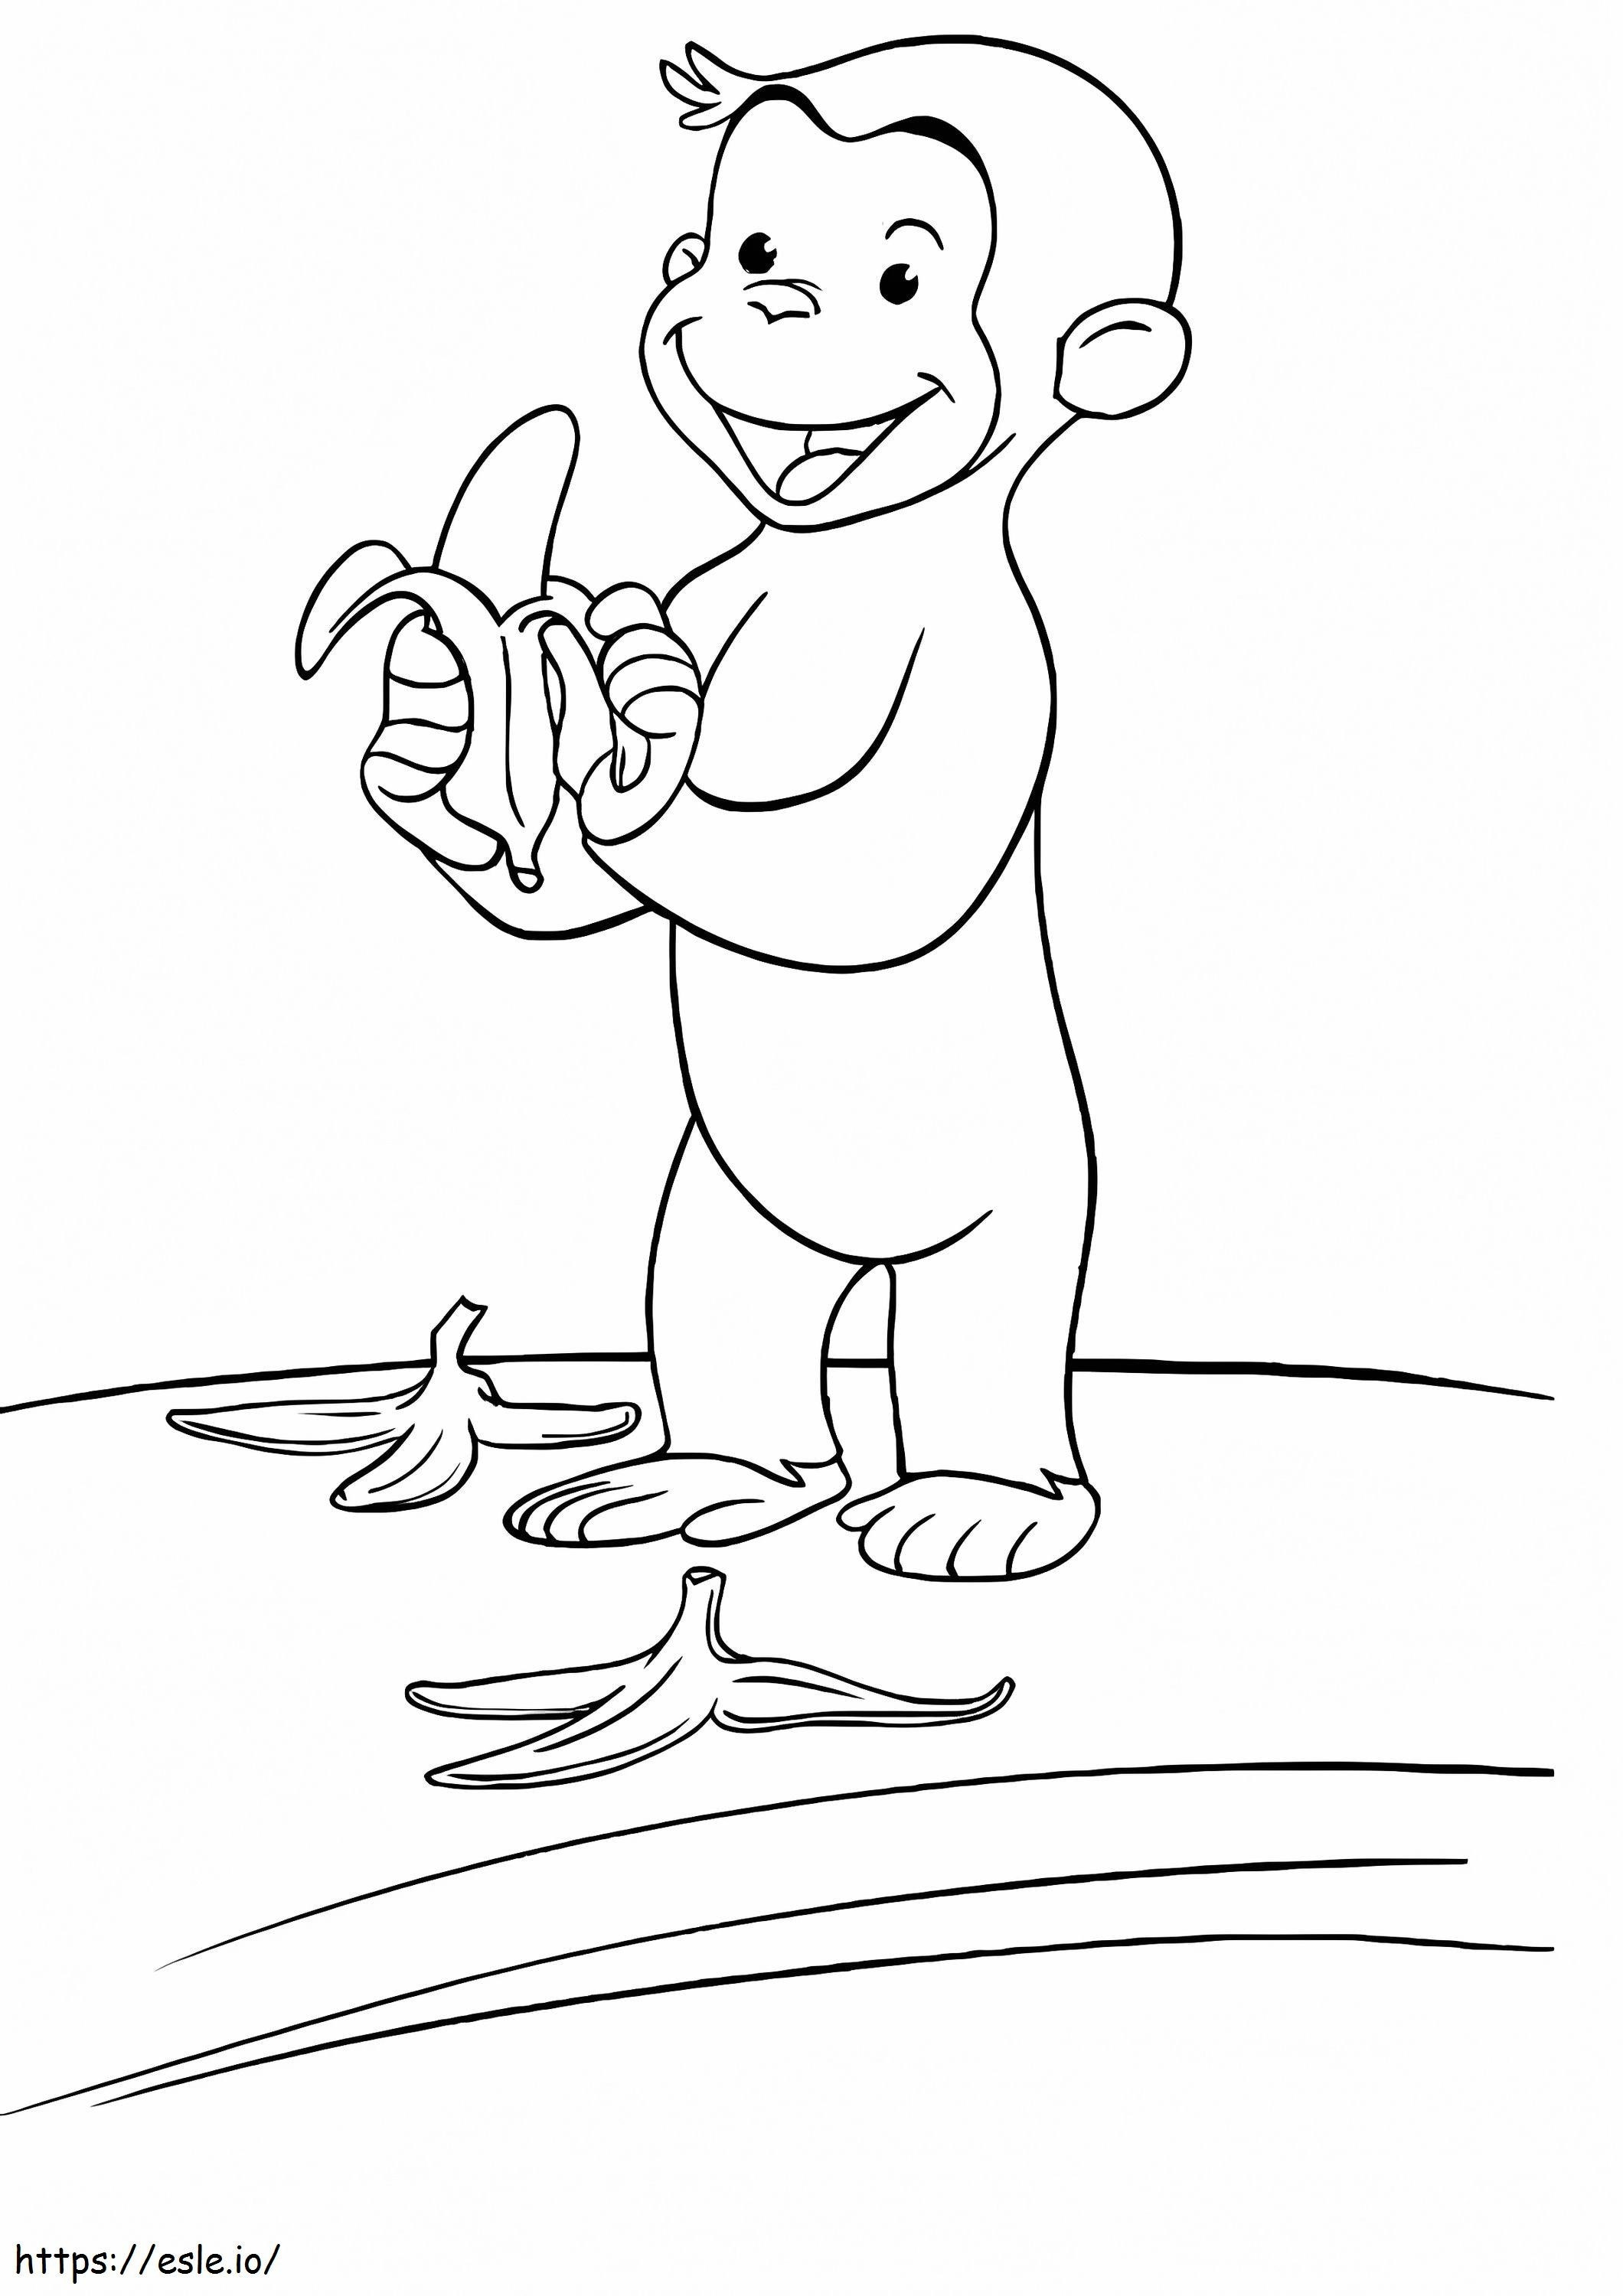 Barraca de Macaco e Comendo Banana para colorir